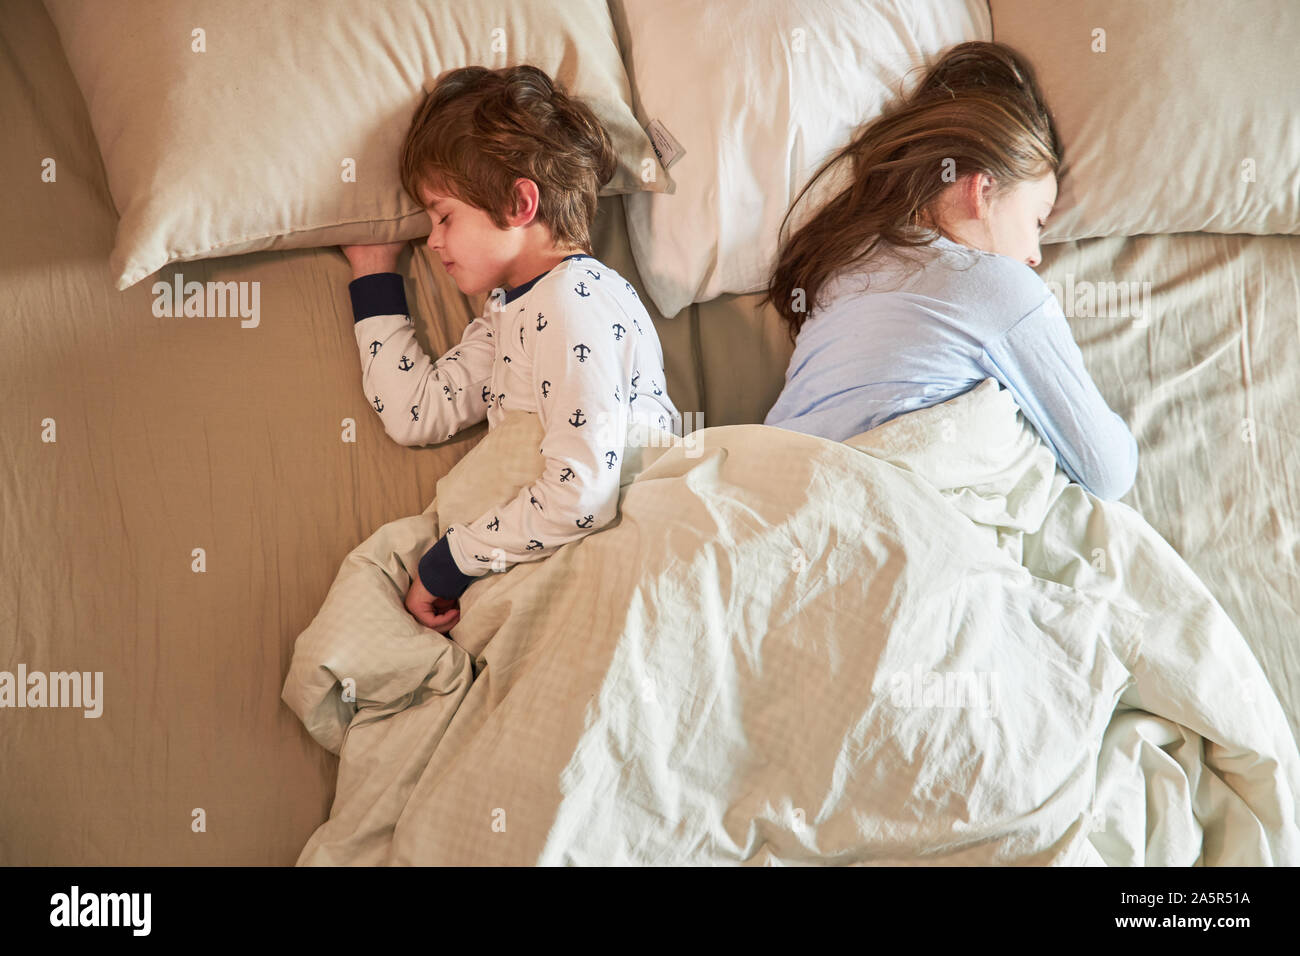 Geschwister Kinder schlafen friedlich zusammen im Bett im Schlafzimmer  Stockfotografie - Alamy